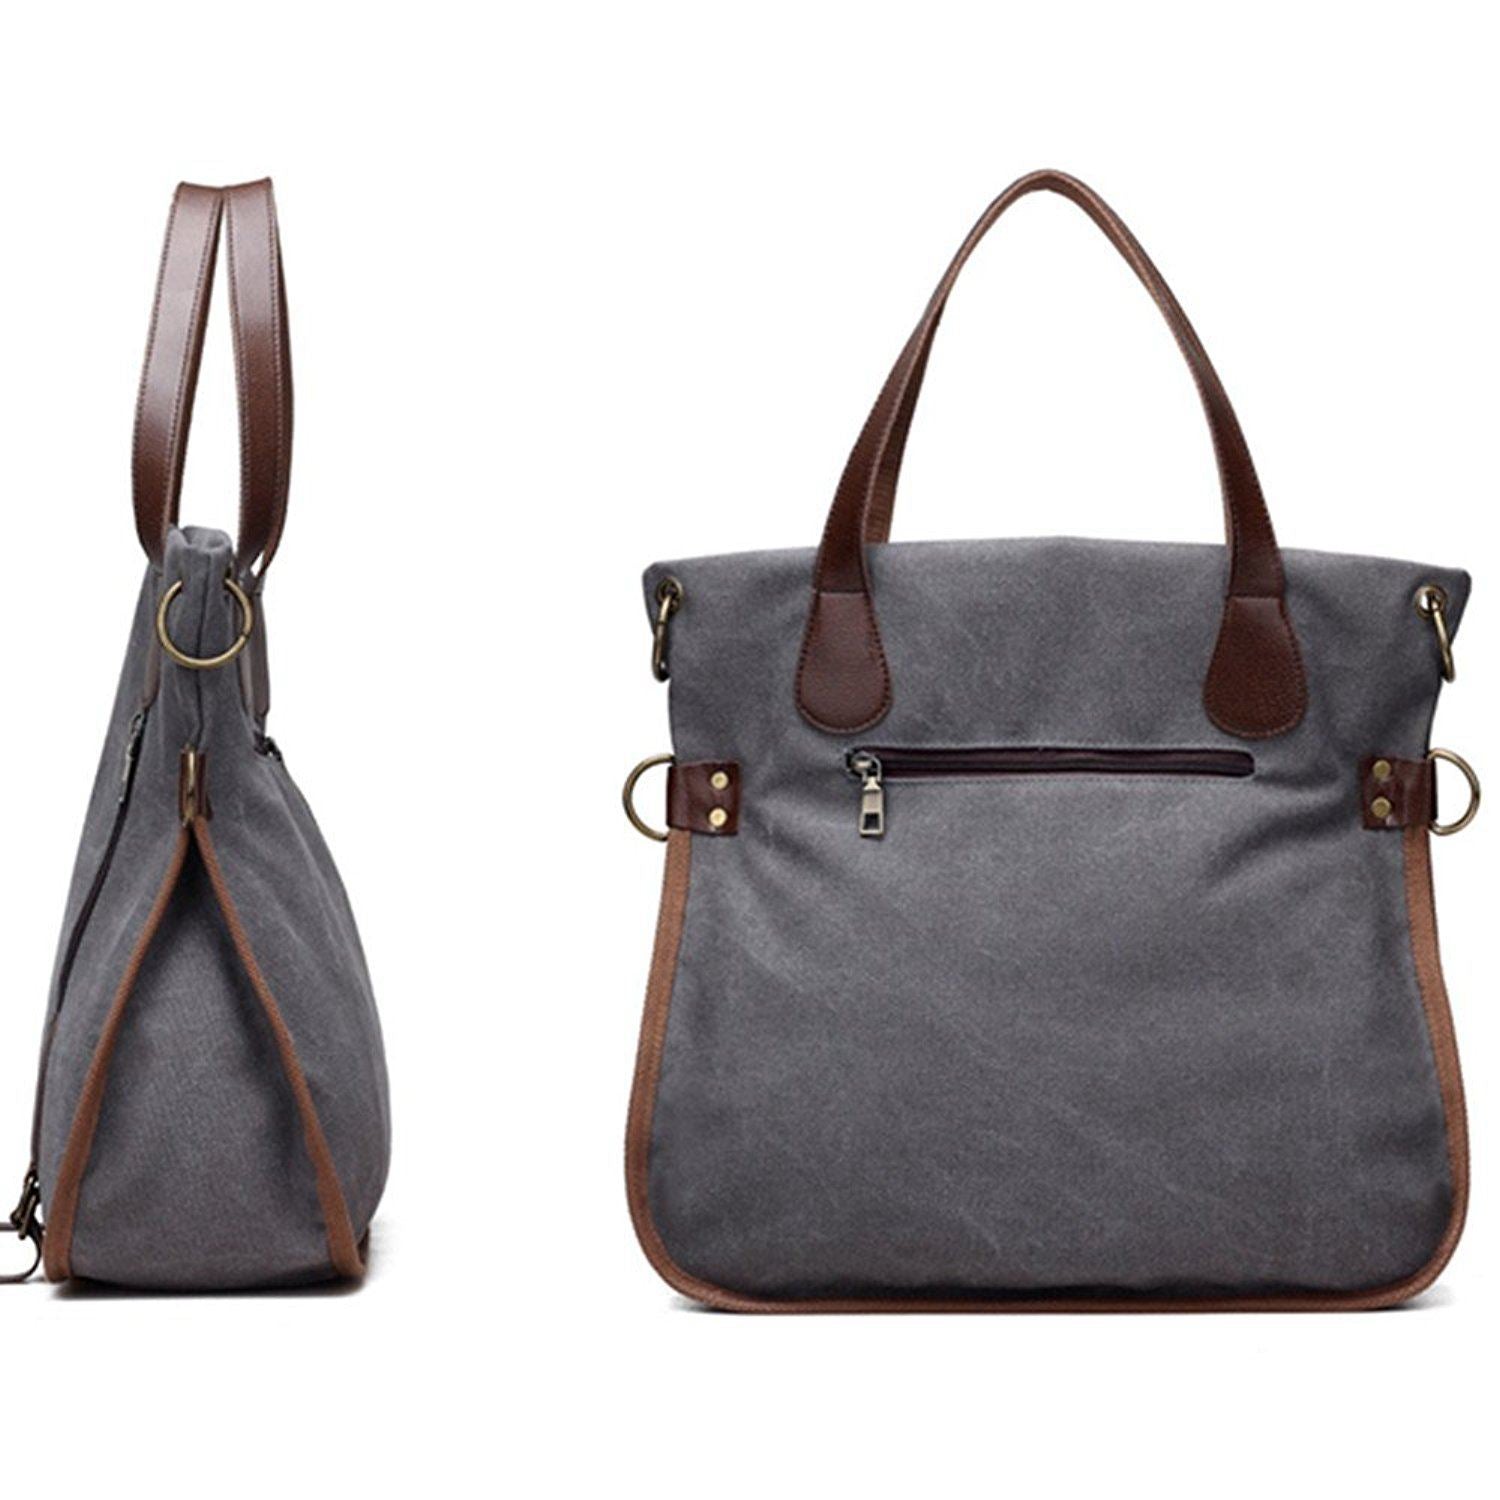 New Women's Canvas Tote Bag Top Handle Bags Crossbody Messenger Bag Shoulder Handbag(Grey) - ebowsos